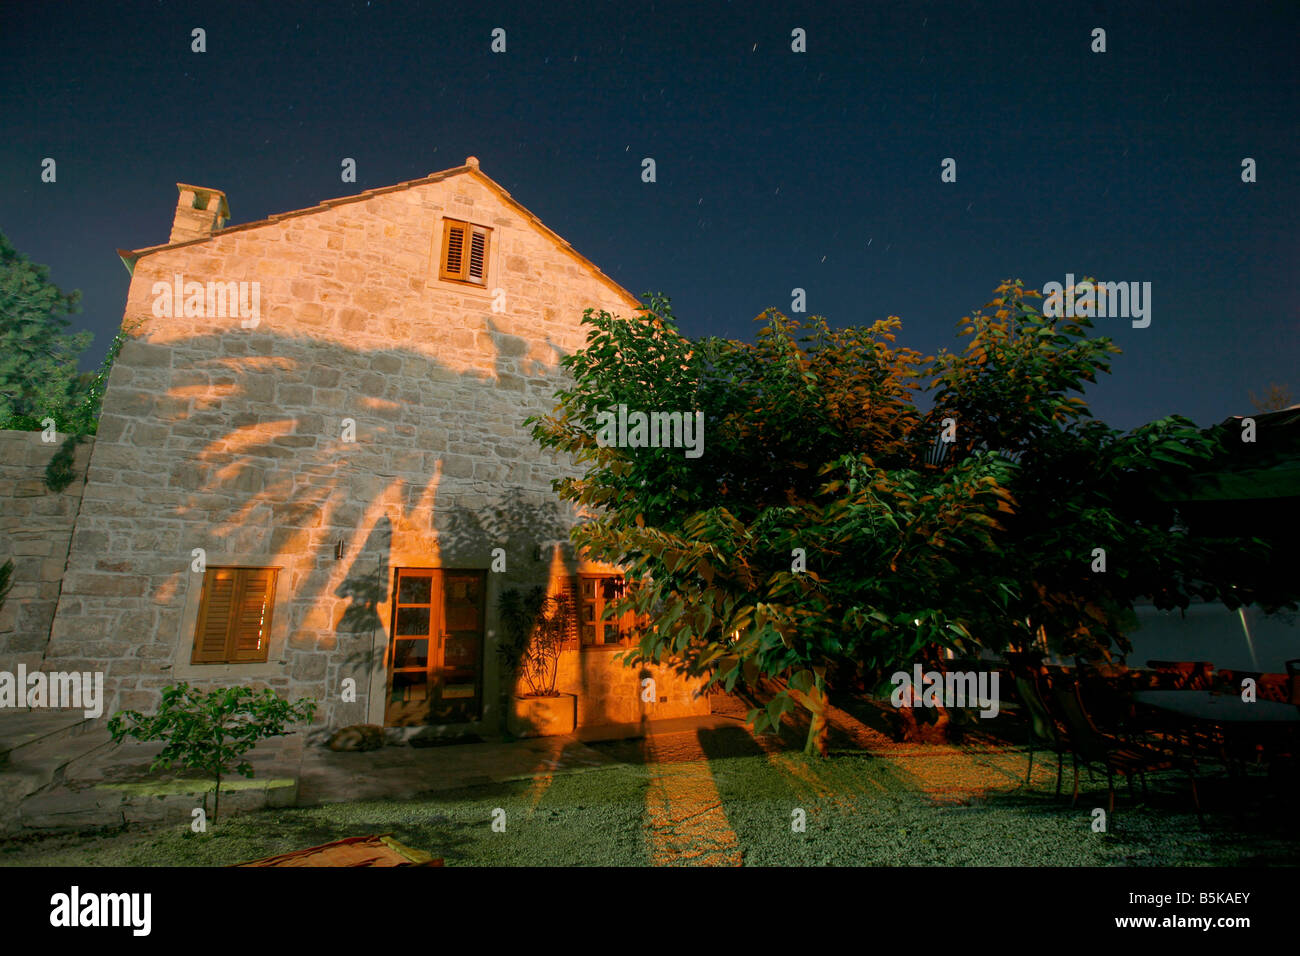 Nachtaufnahme des Hauses mit Palme Baum Schatten der Mauer gegossen Stockfoto